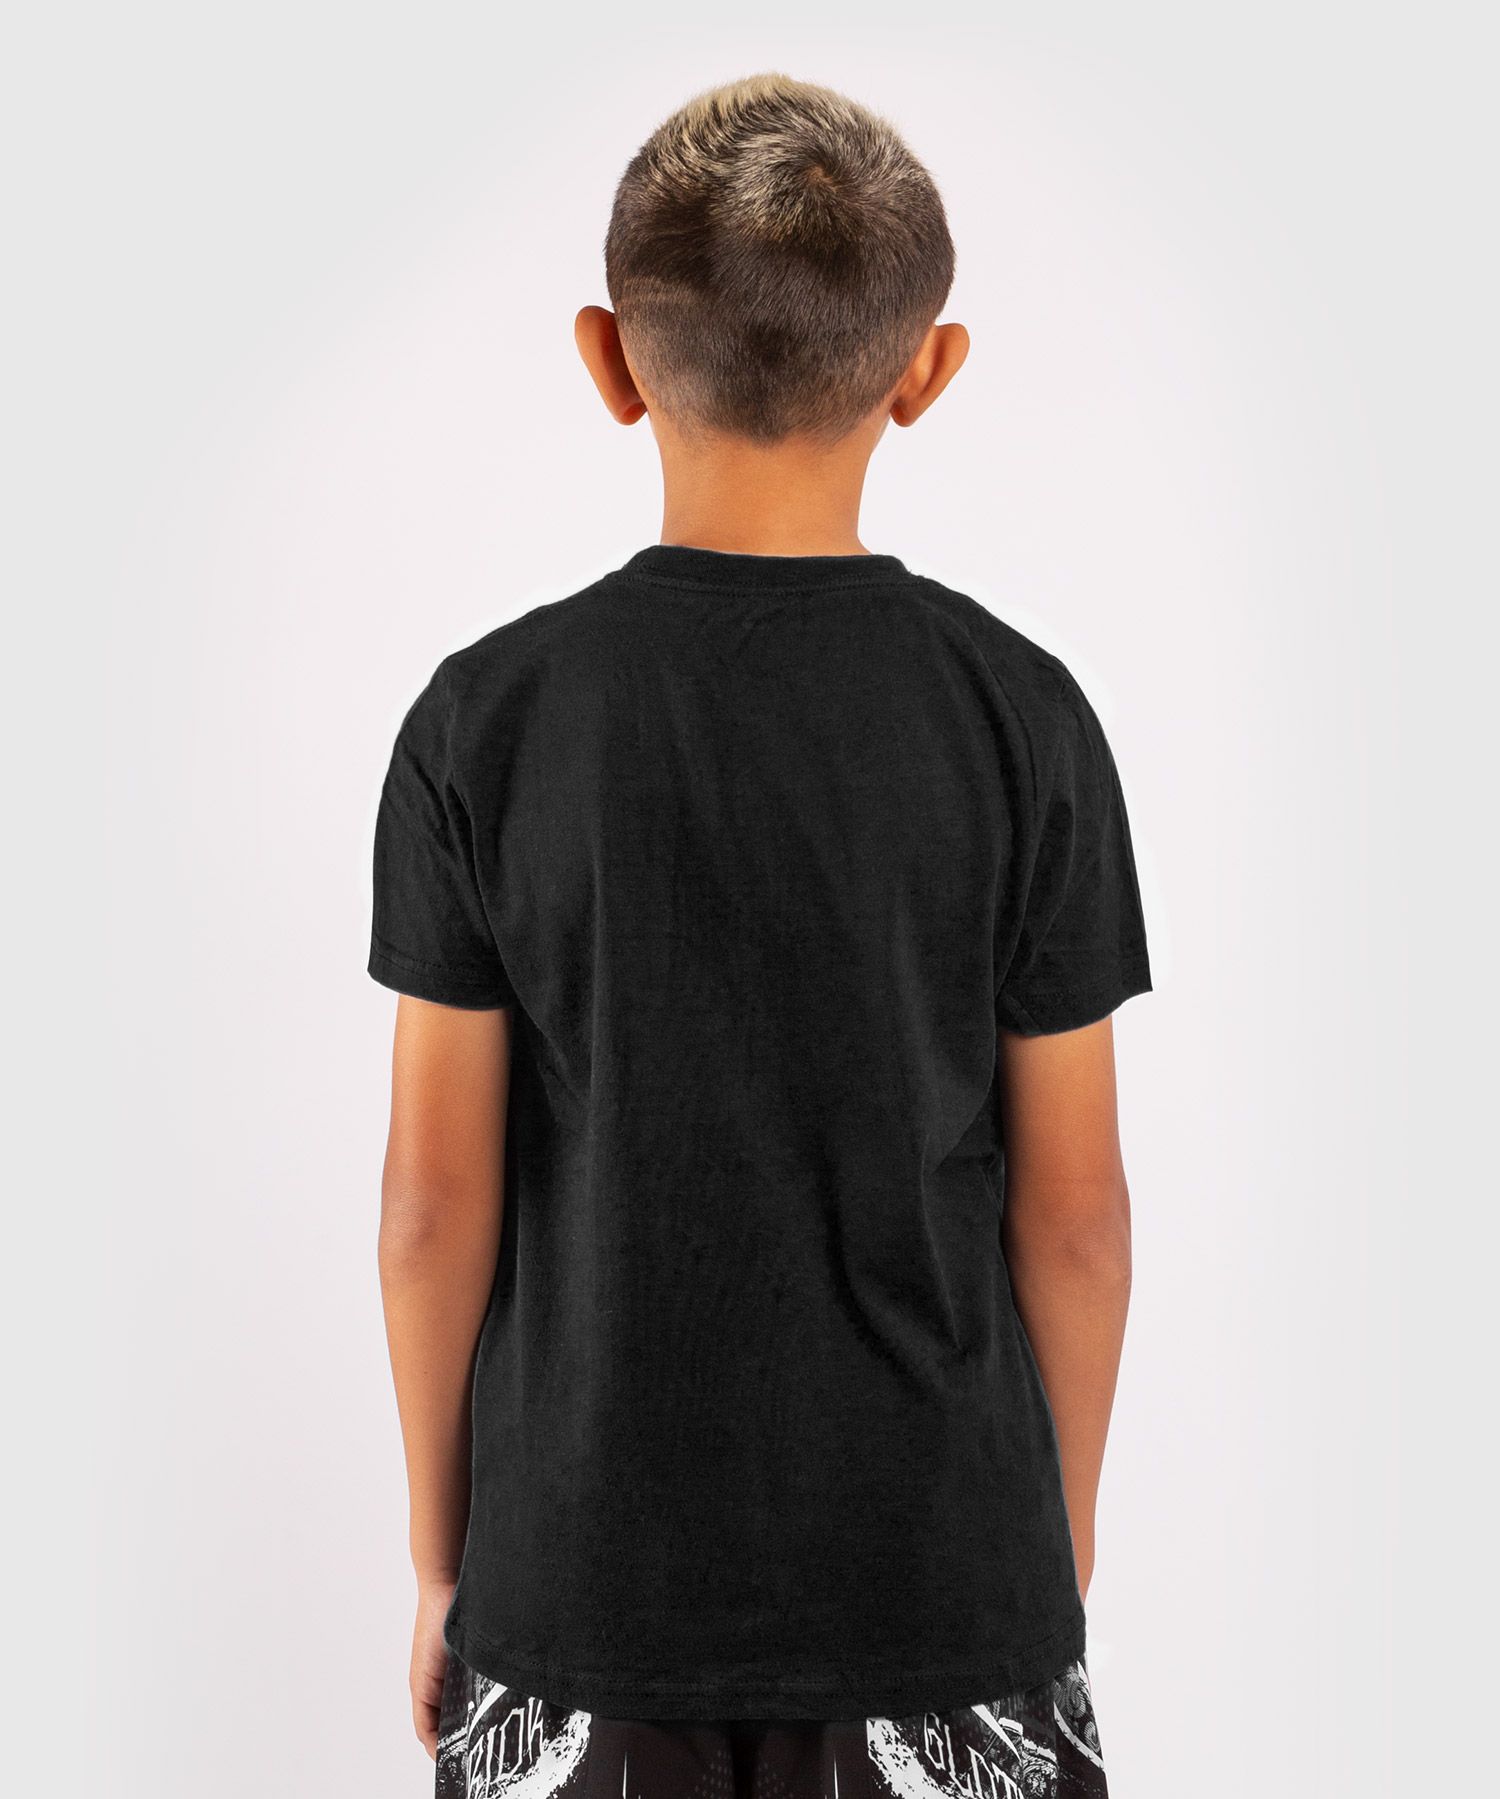 T-shirt Enfant Venum Classic - Noir